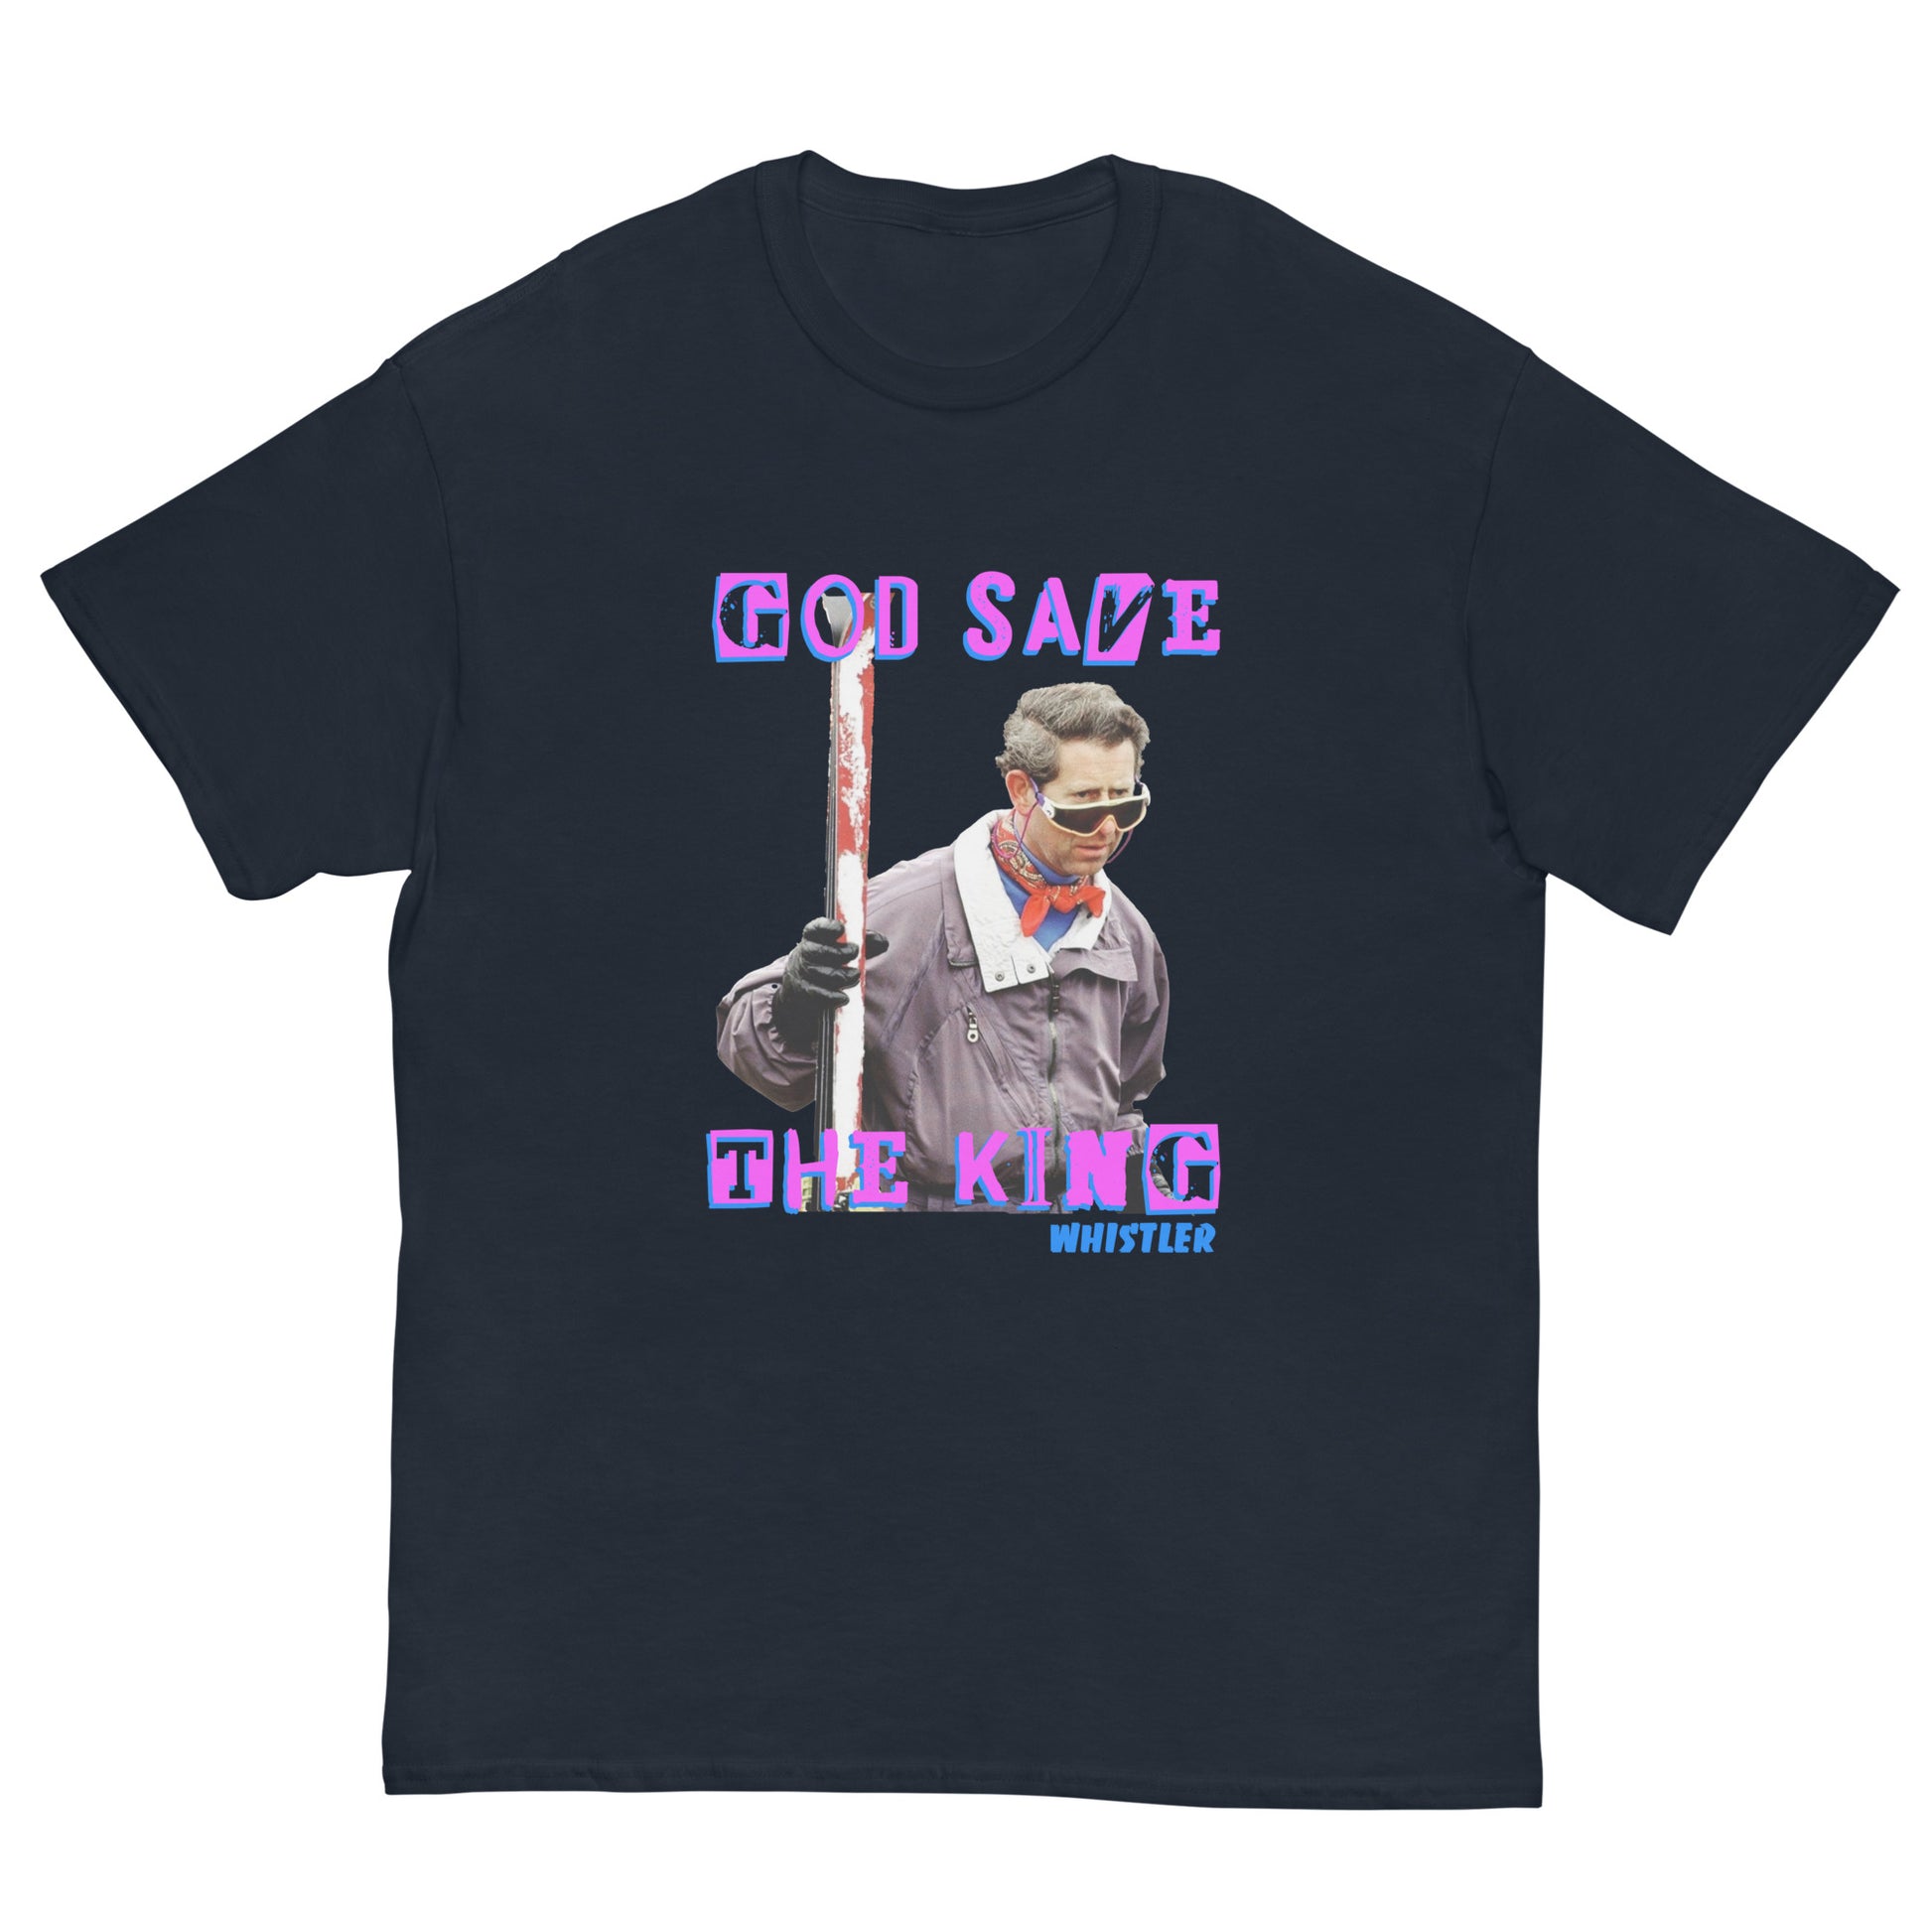 printed t-shirt god save the king whistler 